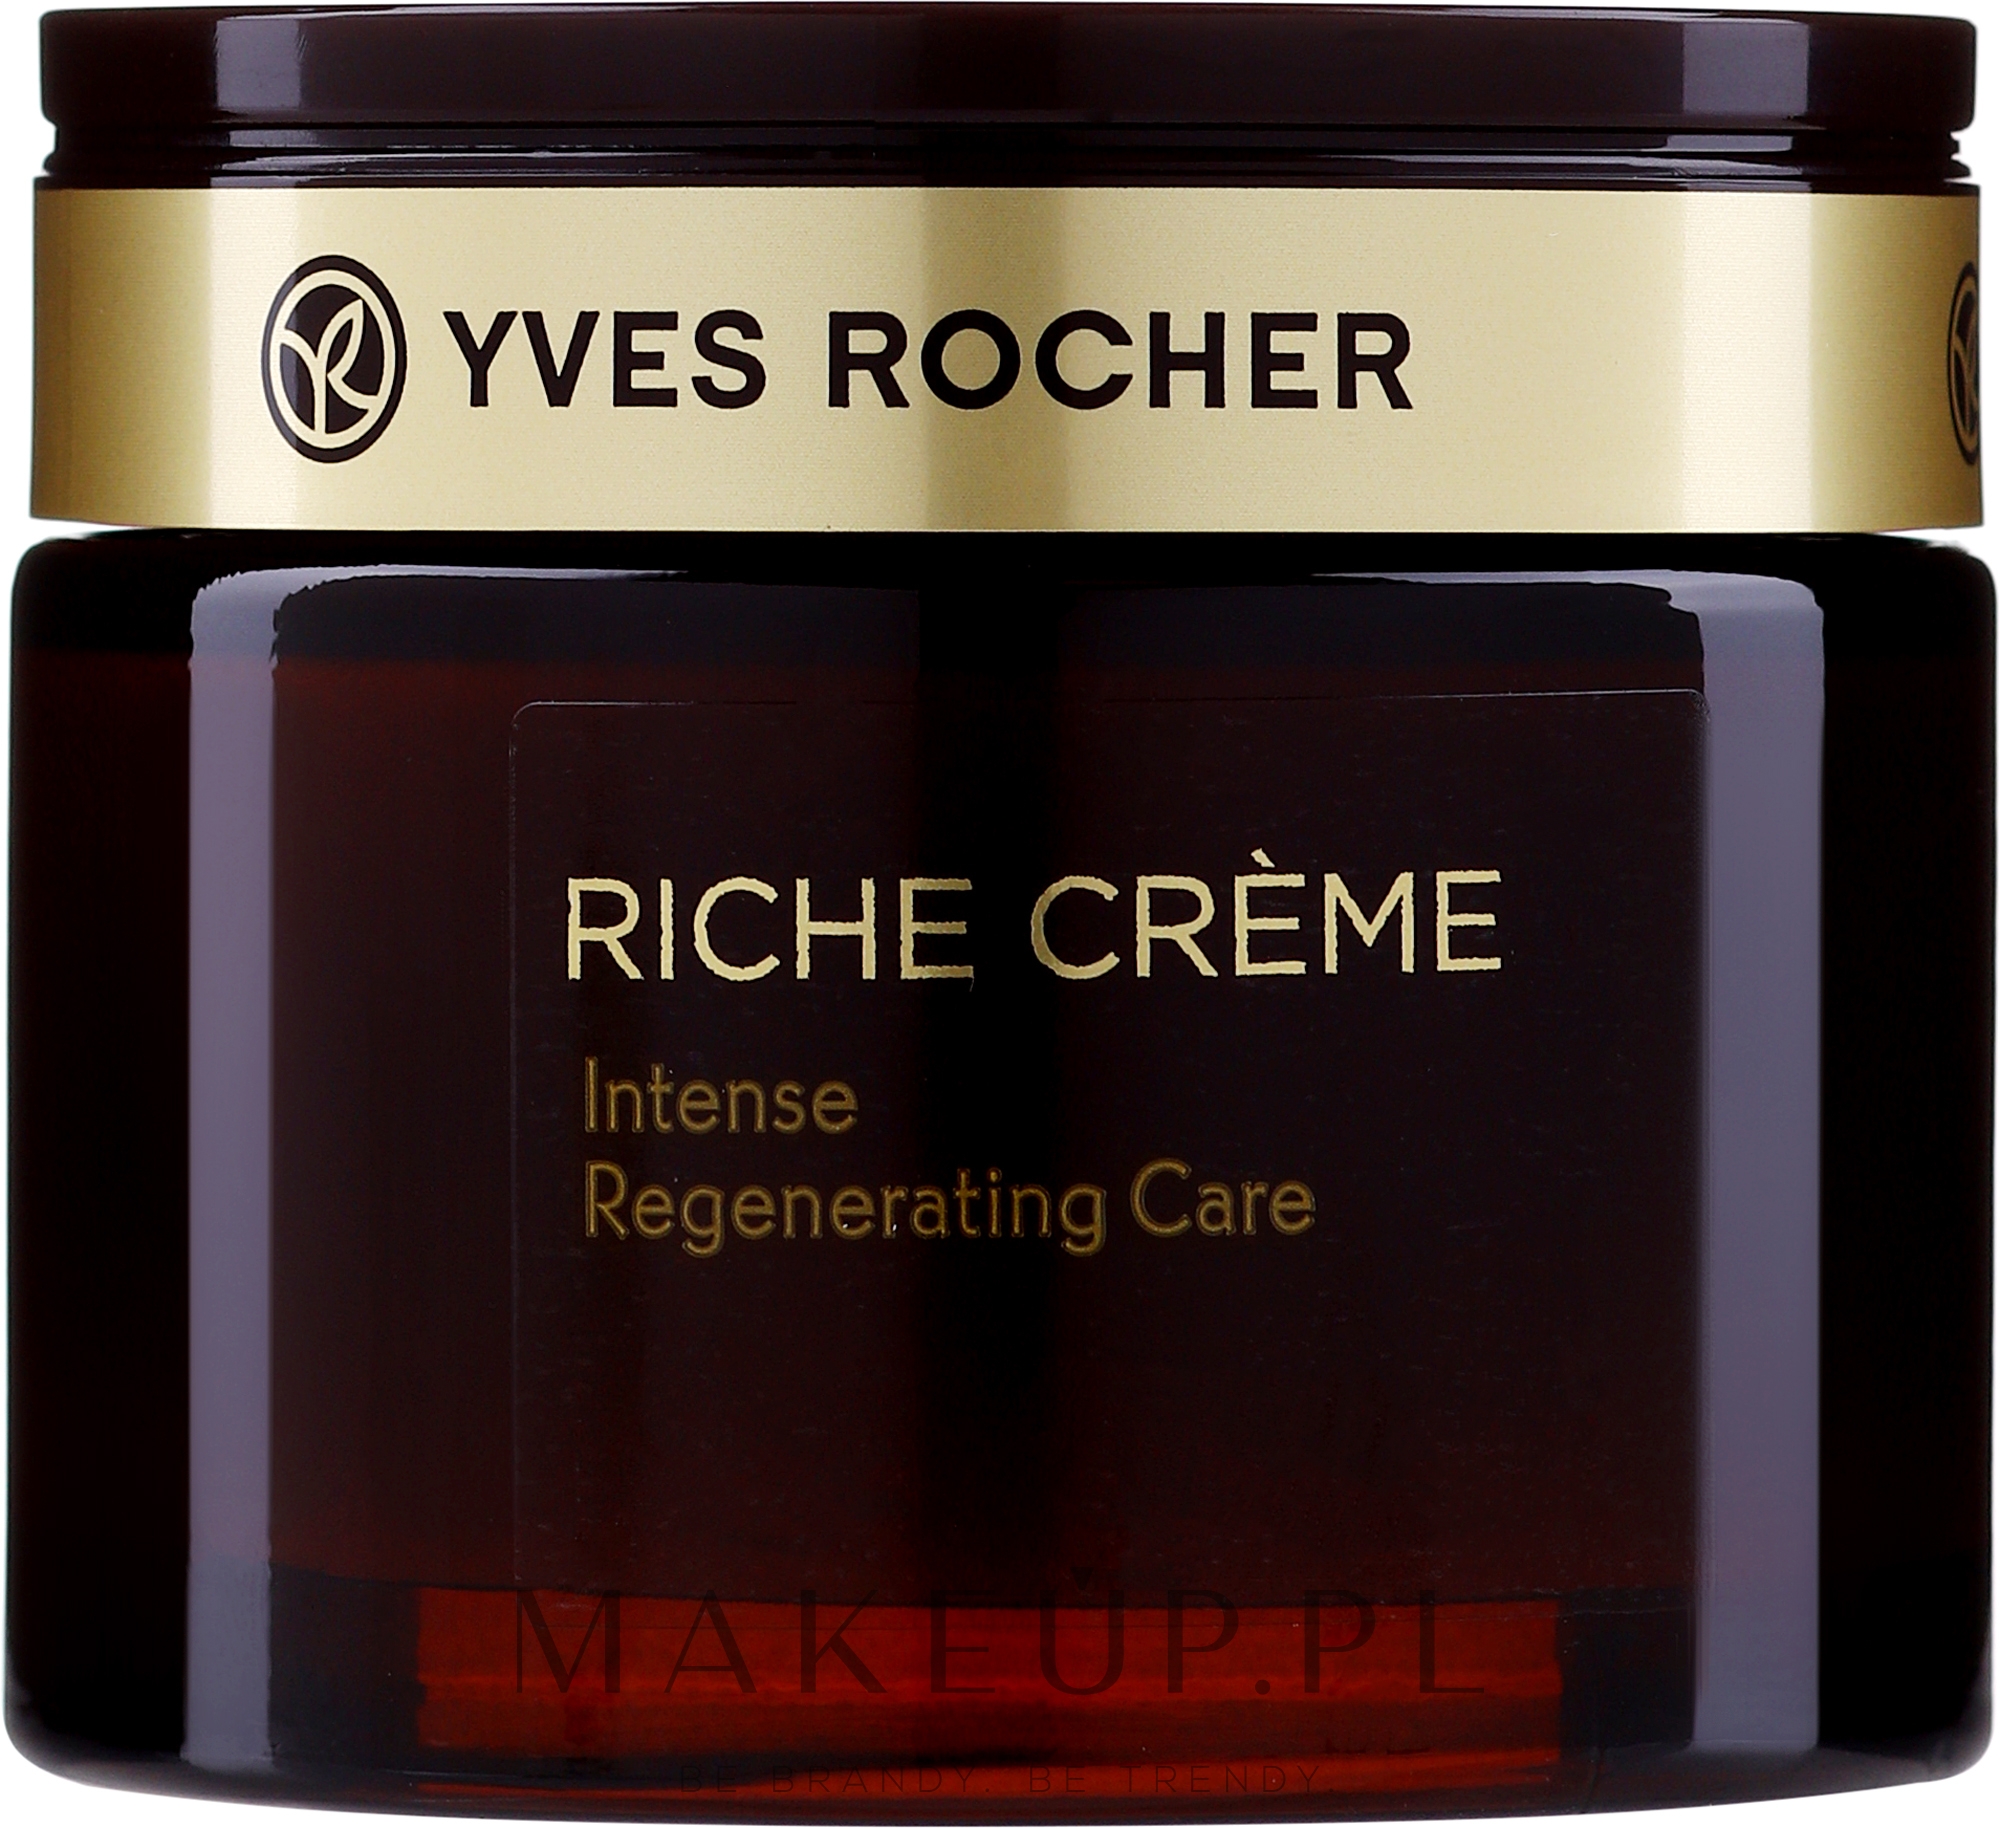 Yves Rocher Riche Creme Face Cream* - PRZECENA! Głęboko rewitalizujący ...